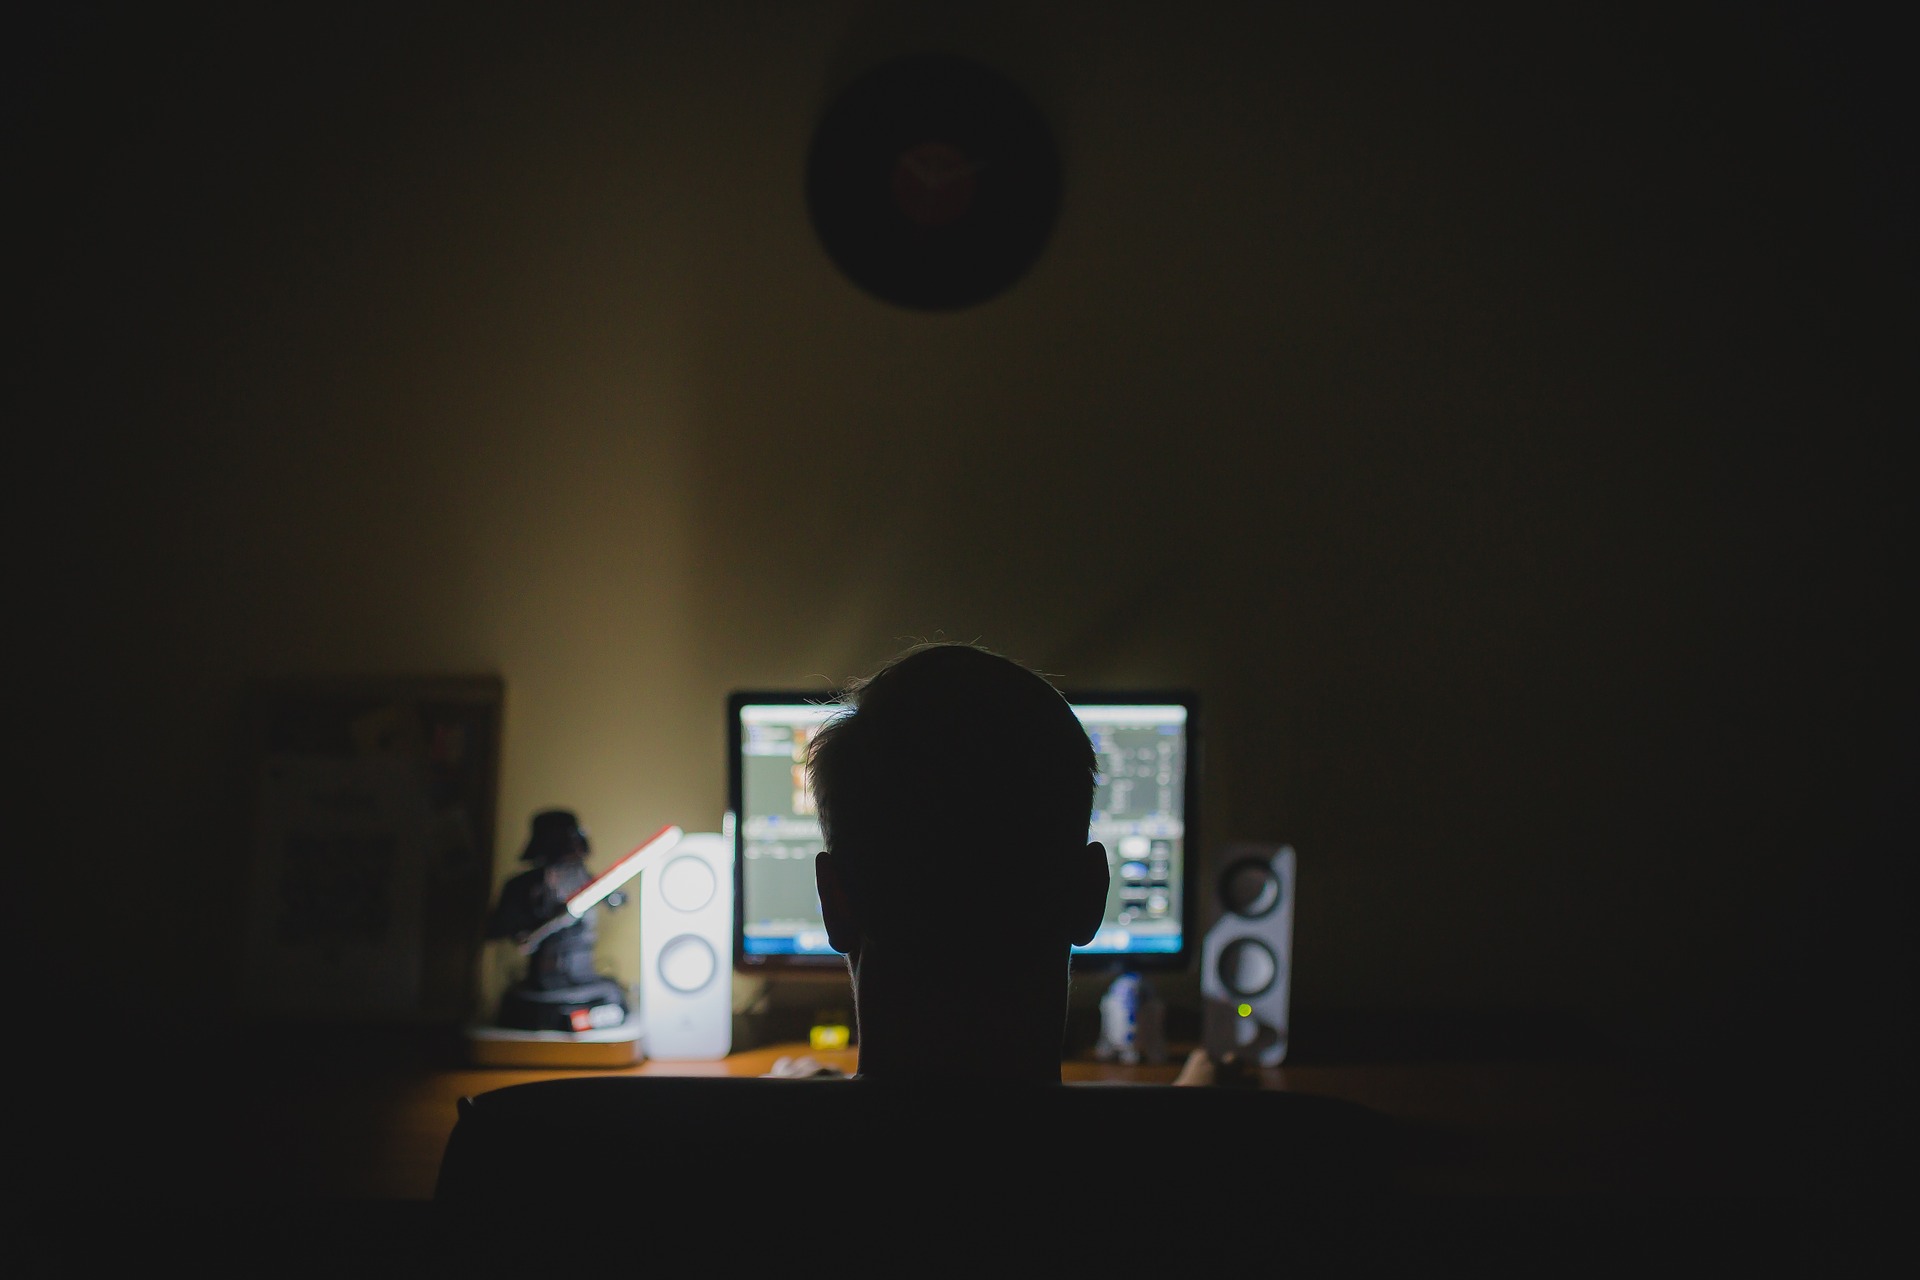 uan computadora encendida en la oscuridad remarca la silueta de un joven viendo la computadora